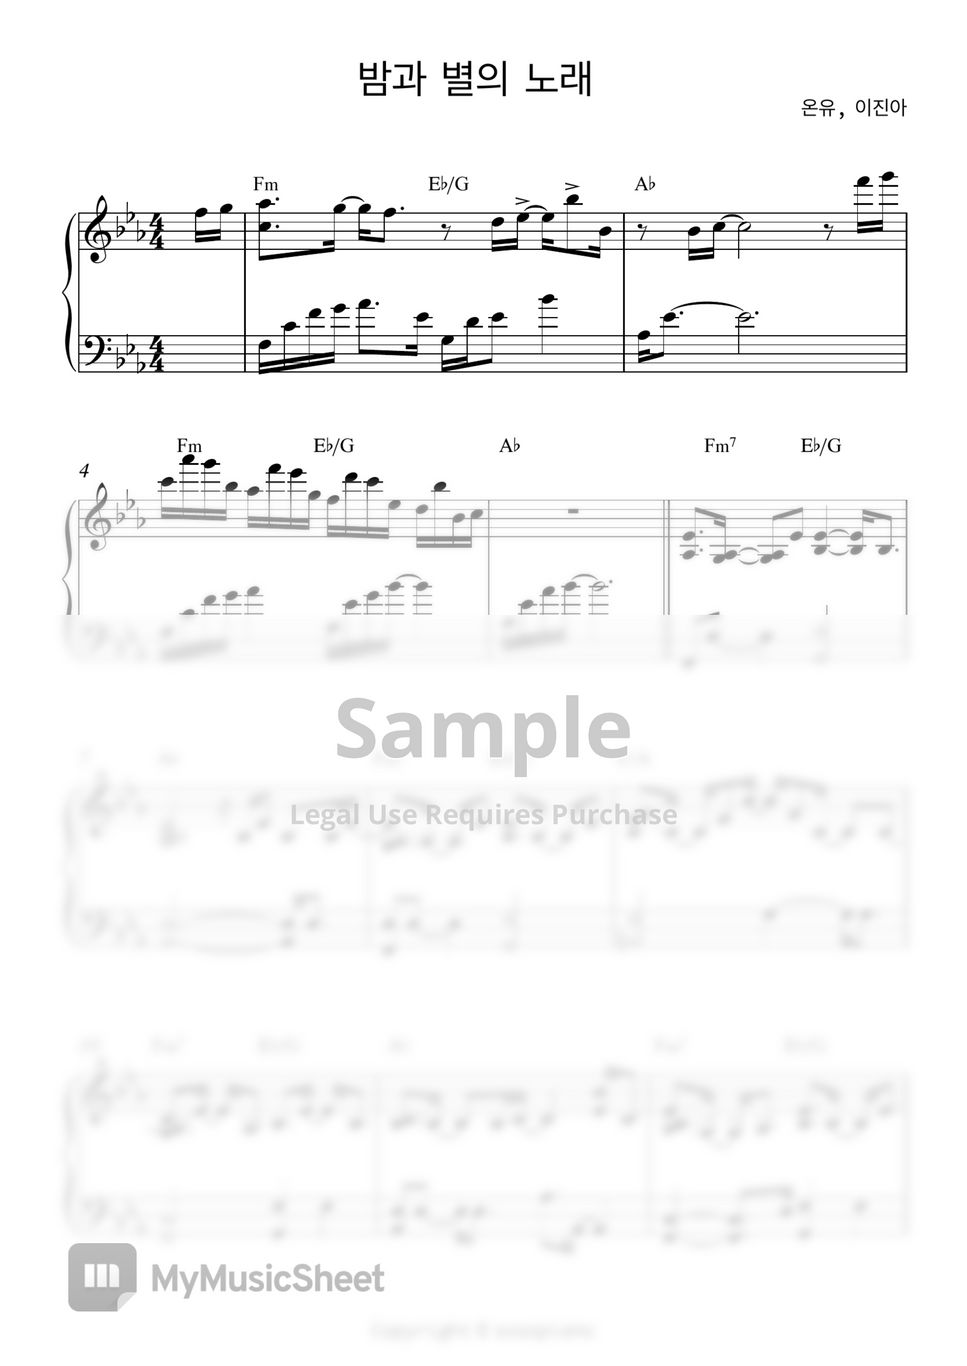 온유, 이진아 - 밤과 별의 노래 (원곡 피아노 양손) by sosopiano